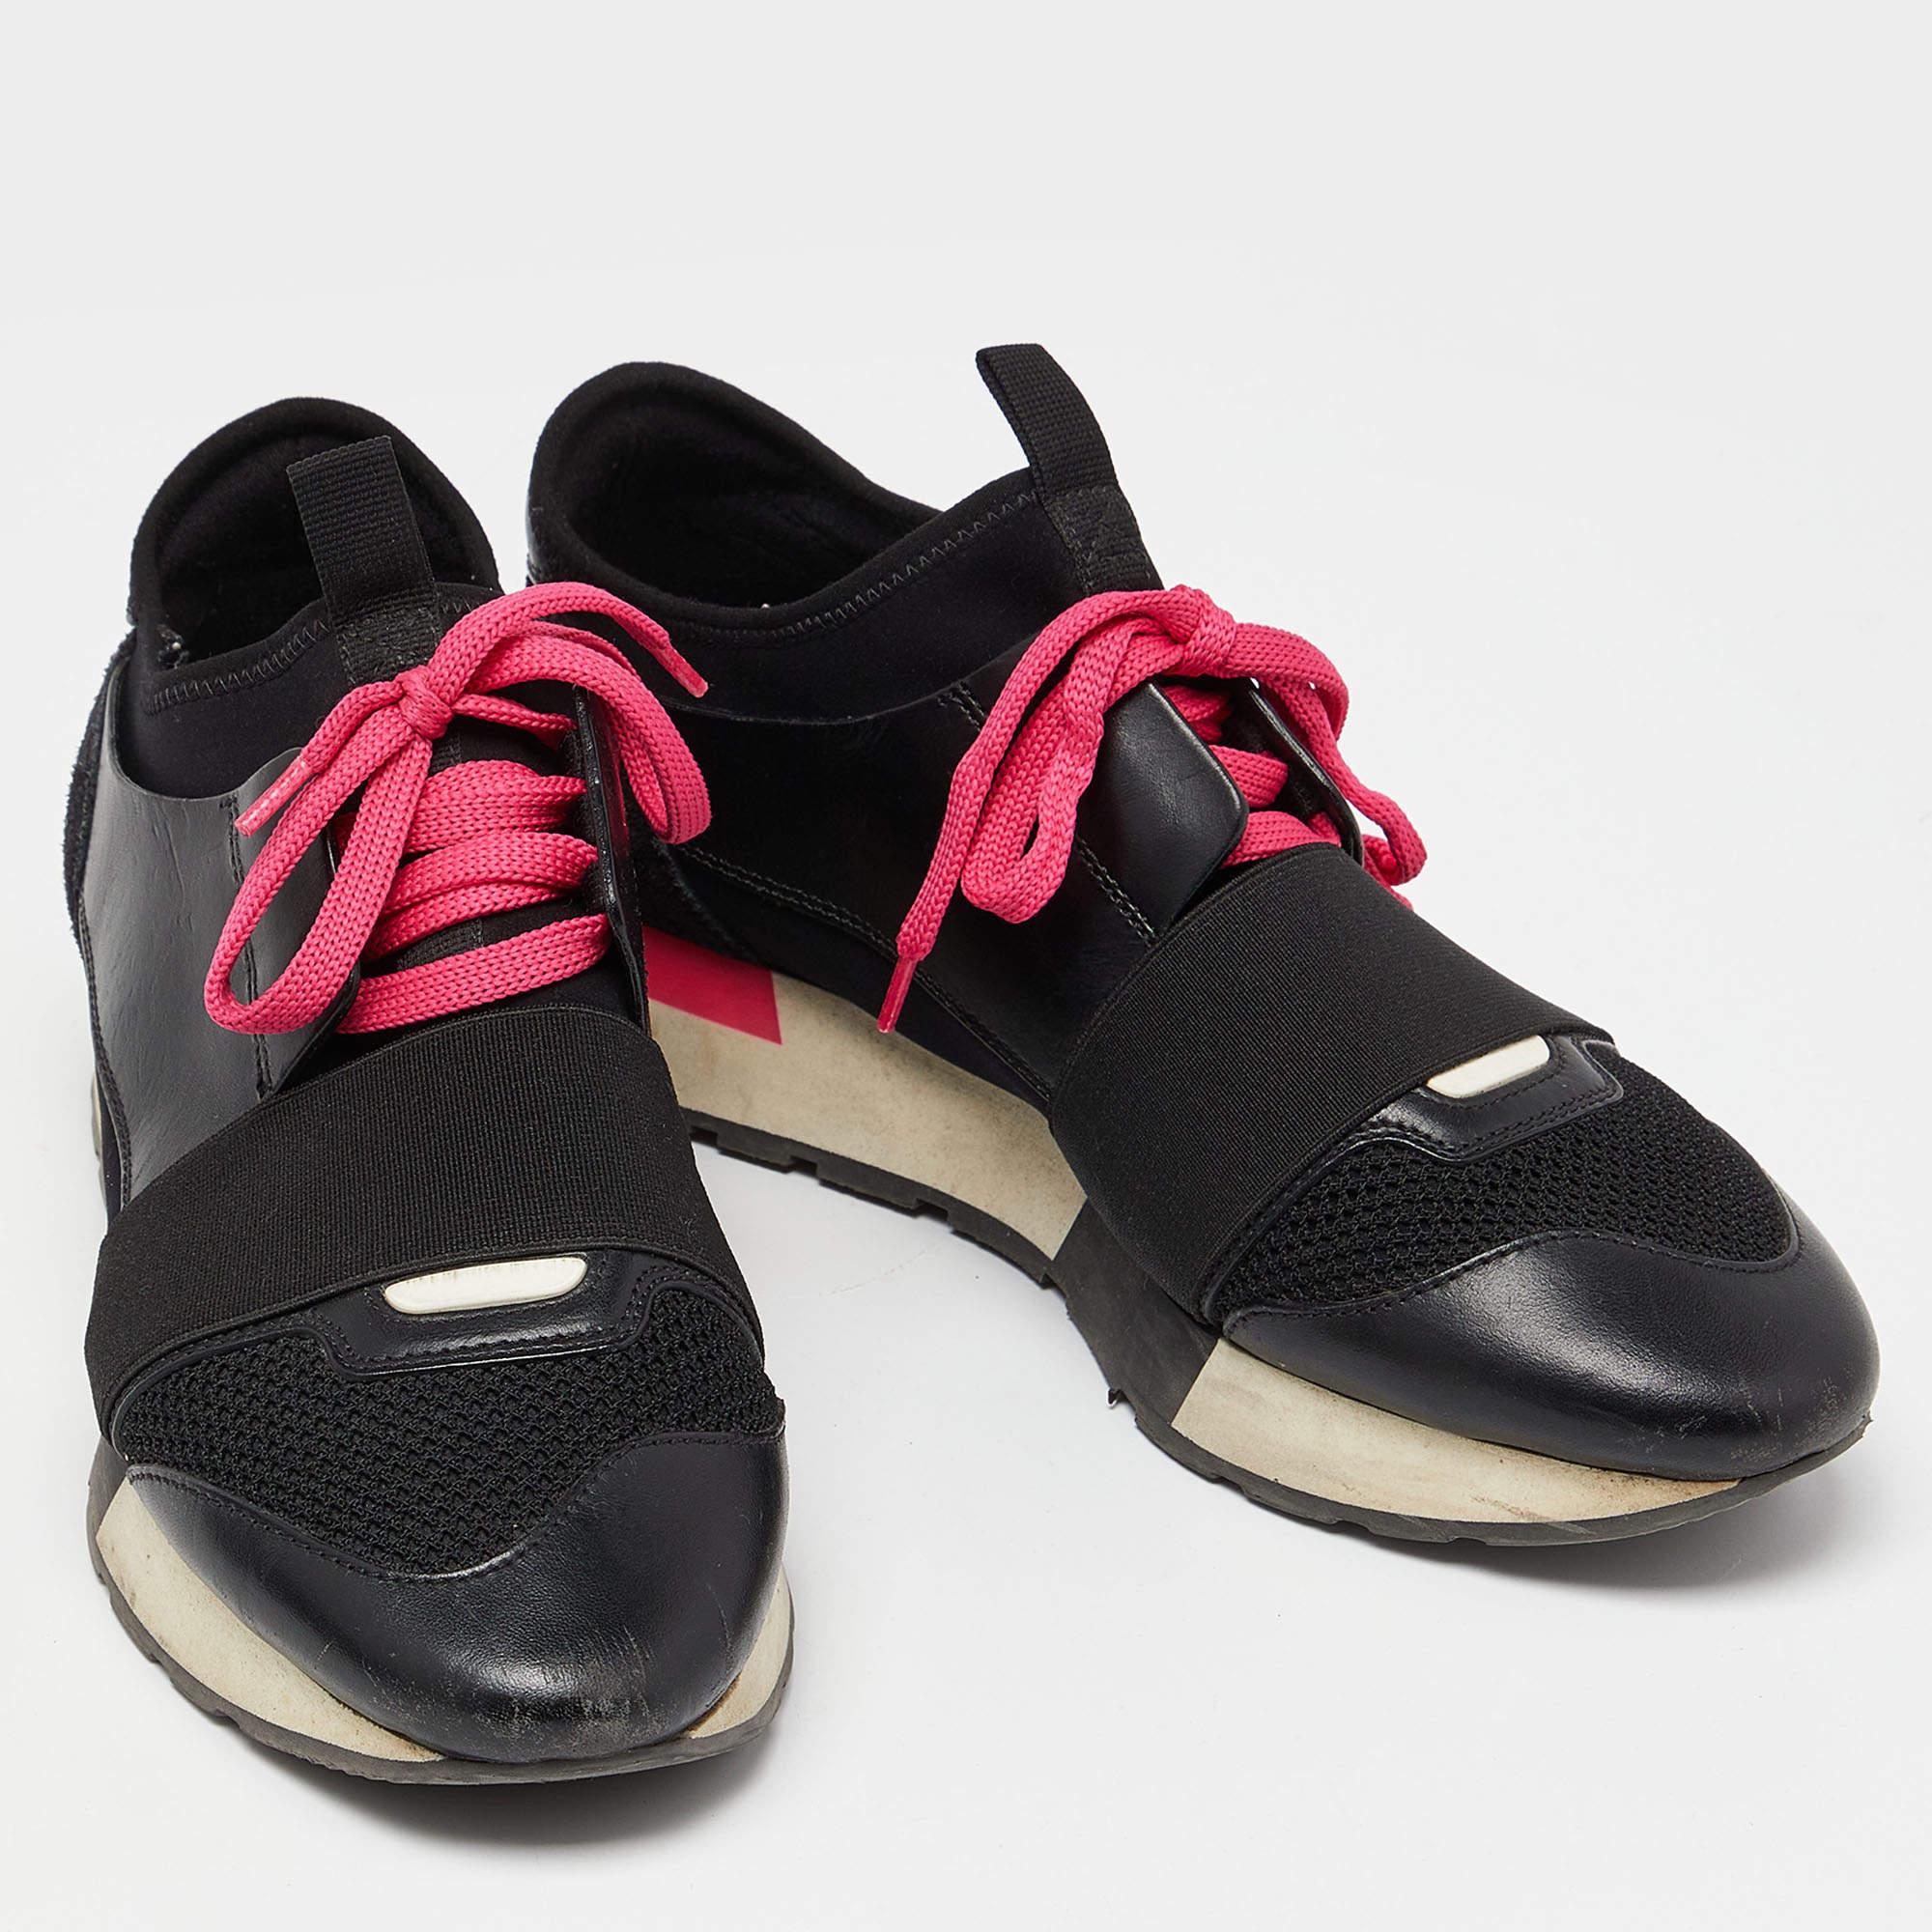 Donnez à votre tenue une touche de luxe avec cette paire de baskets Balenciaga. Les chaussures sont parfaitement cousues pour vous permettre de vous démarquer pendant longtemps.

